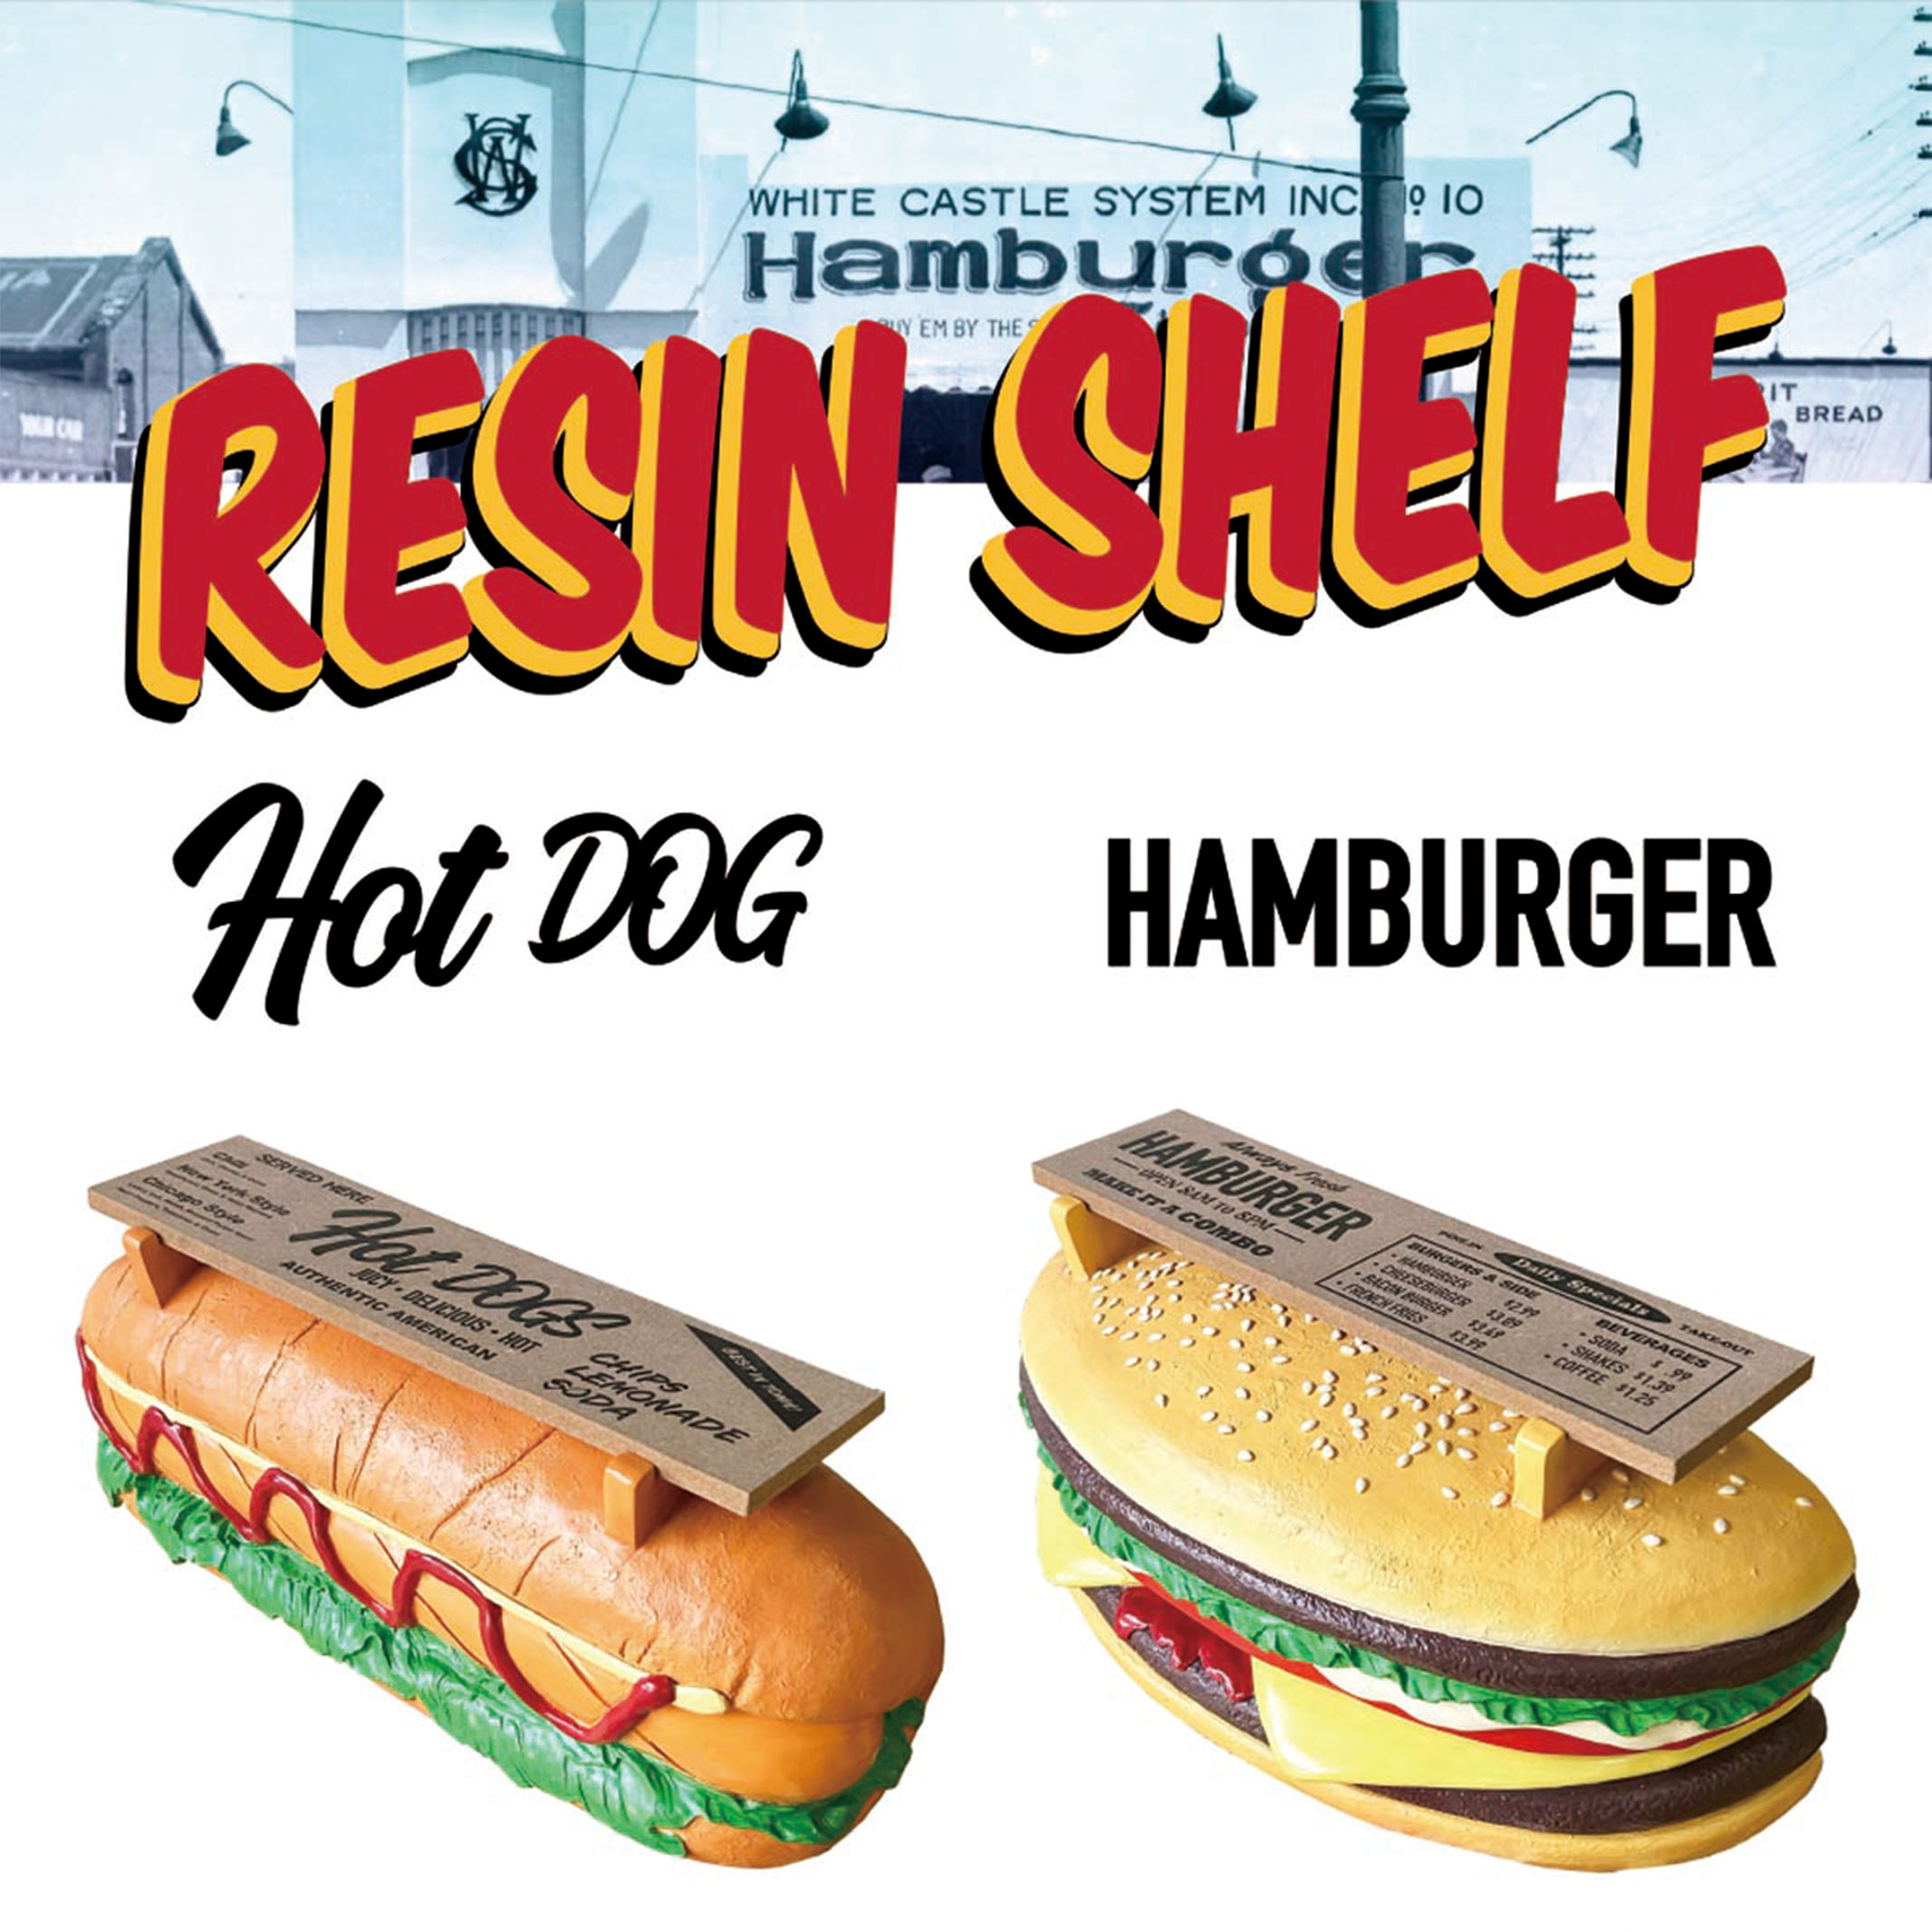 【これぞアメリカン！】壁掛け HOT DOG & HAMBURGER シェルフ ダイナー